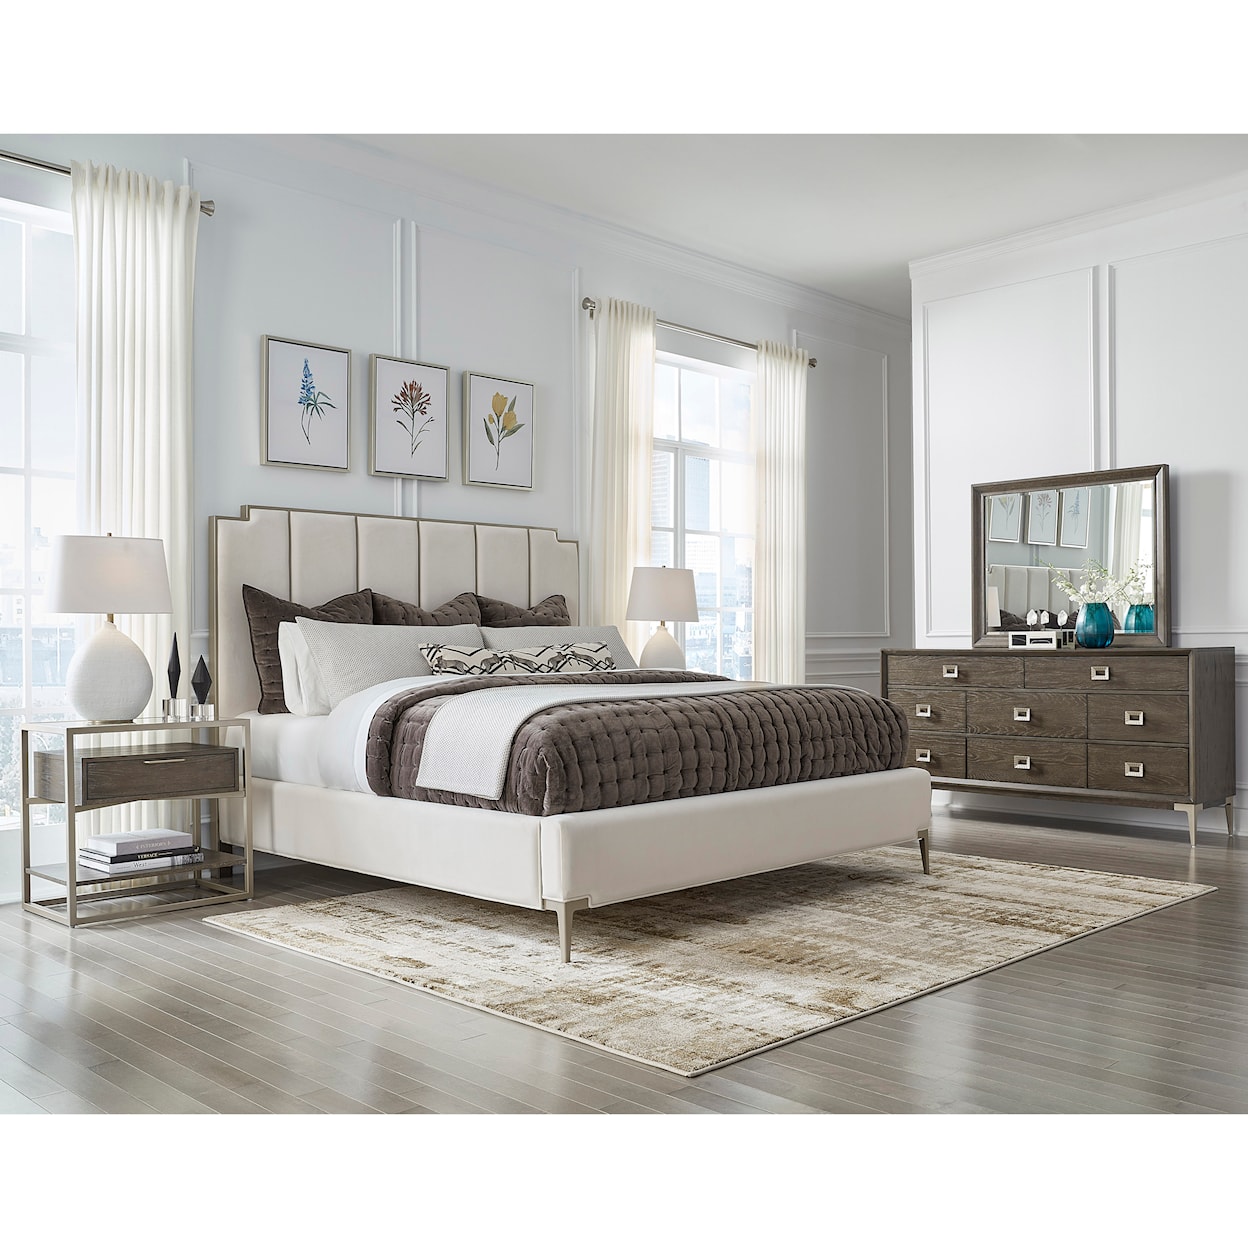 Pulaski Furniture Boulevard Queen Upholstered Bed